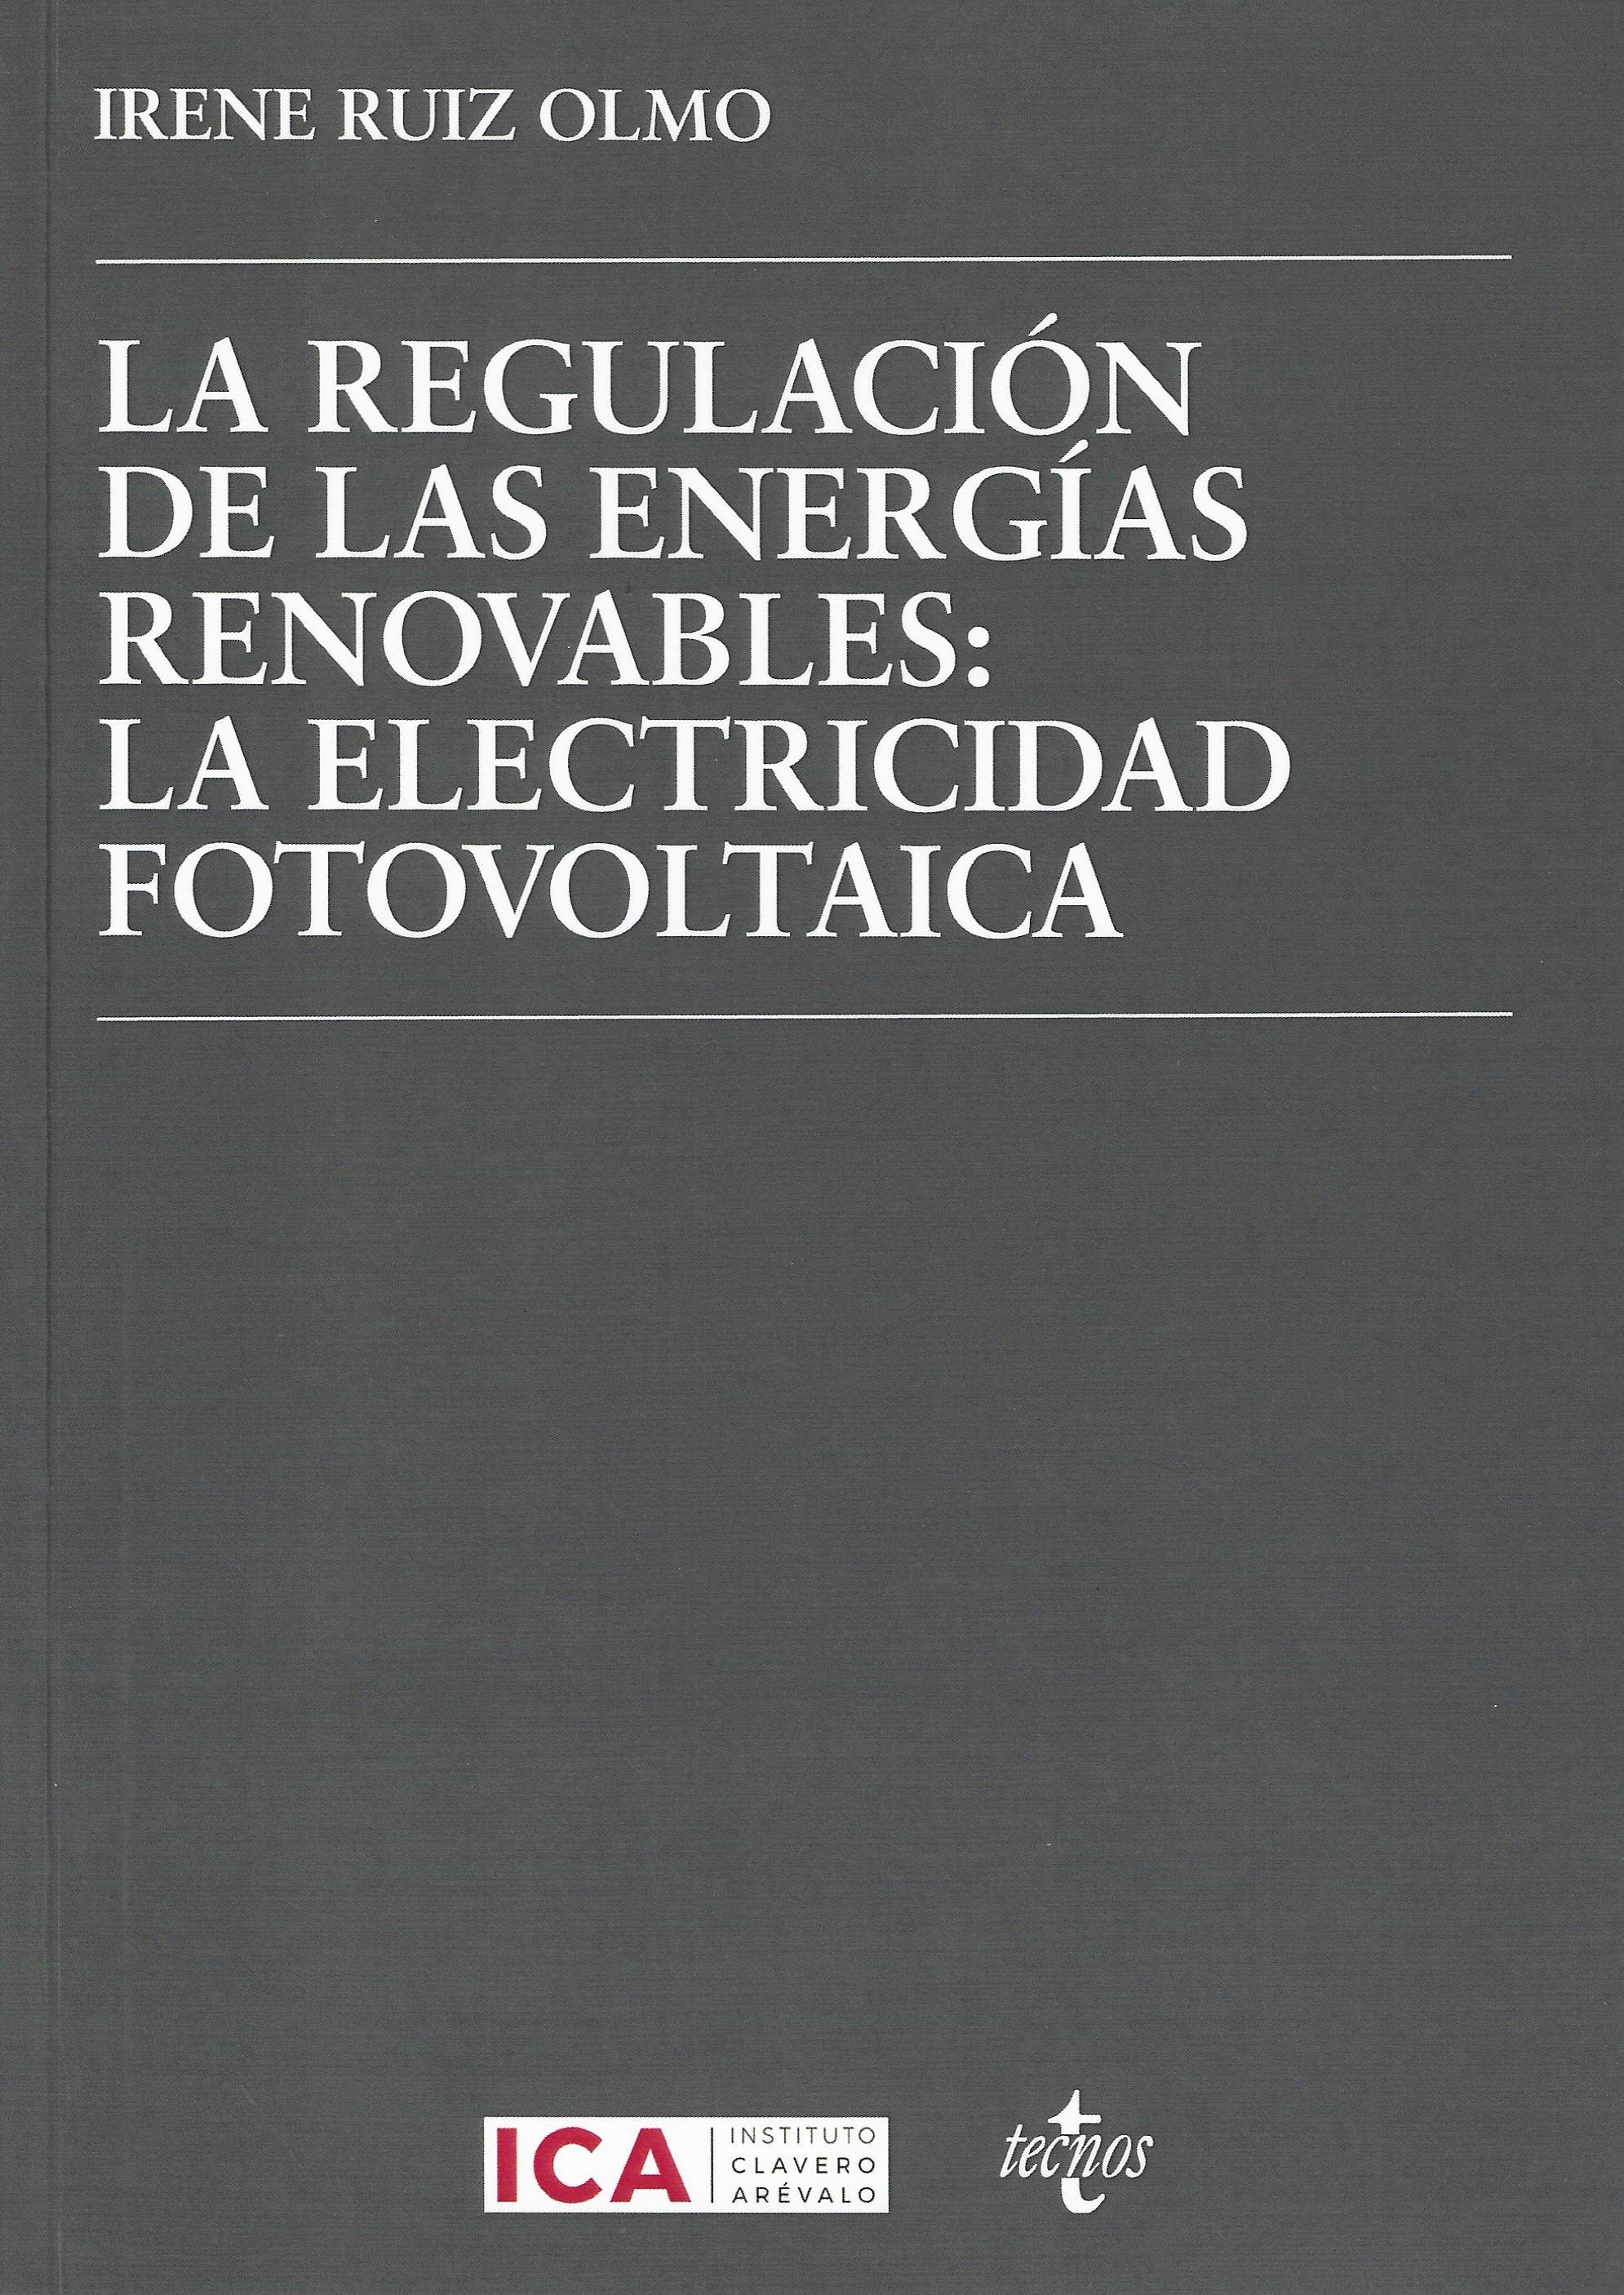 Imagen de portada del libro La regulación de las energías renovables: la electricidad fotovoltaica